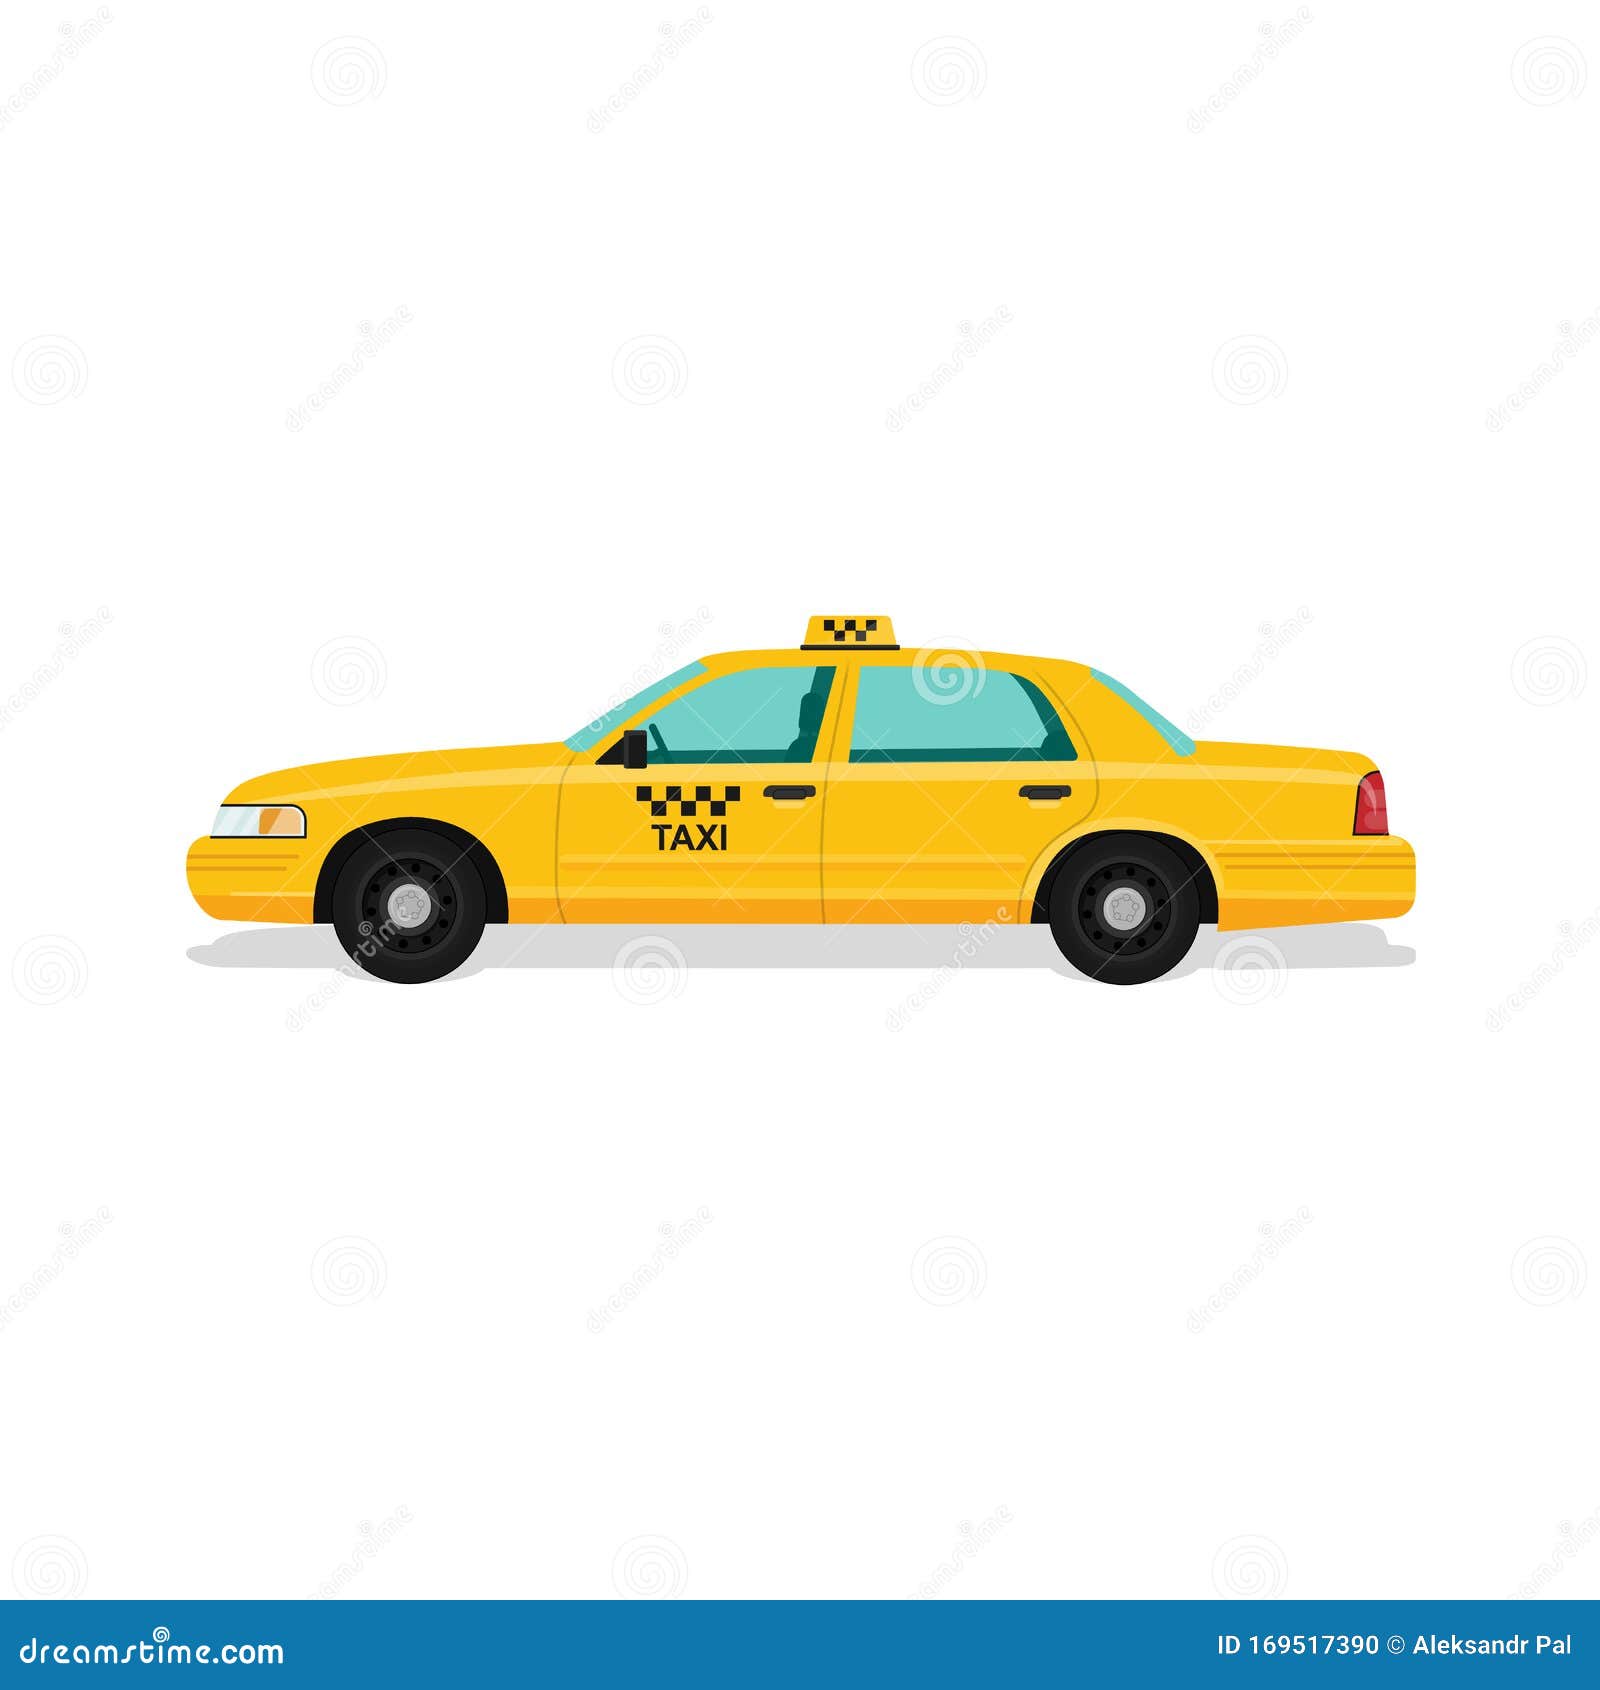 taxi yellow car cab